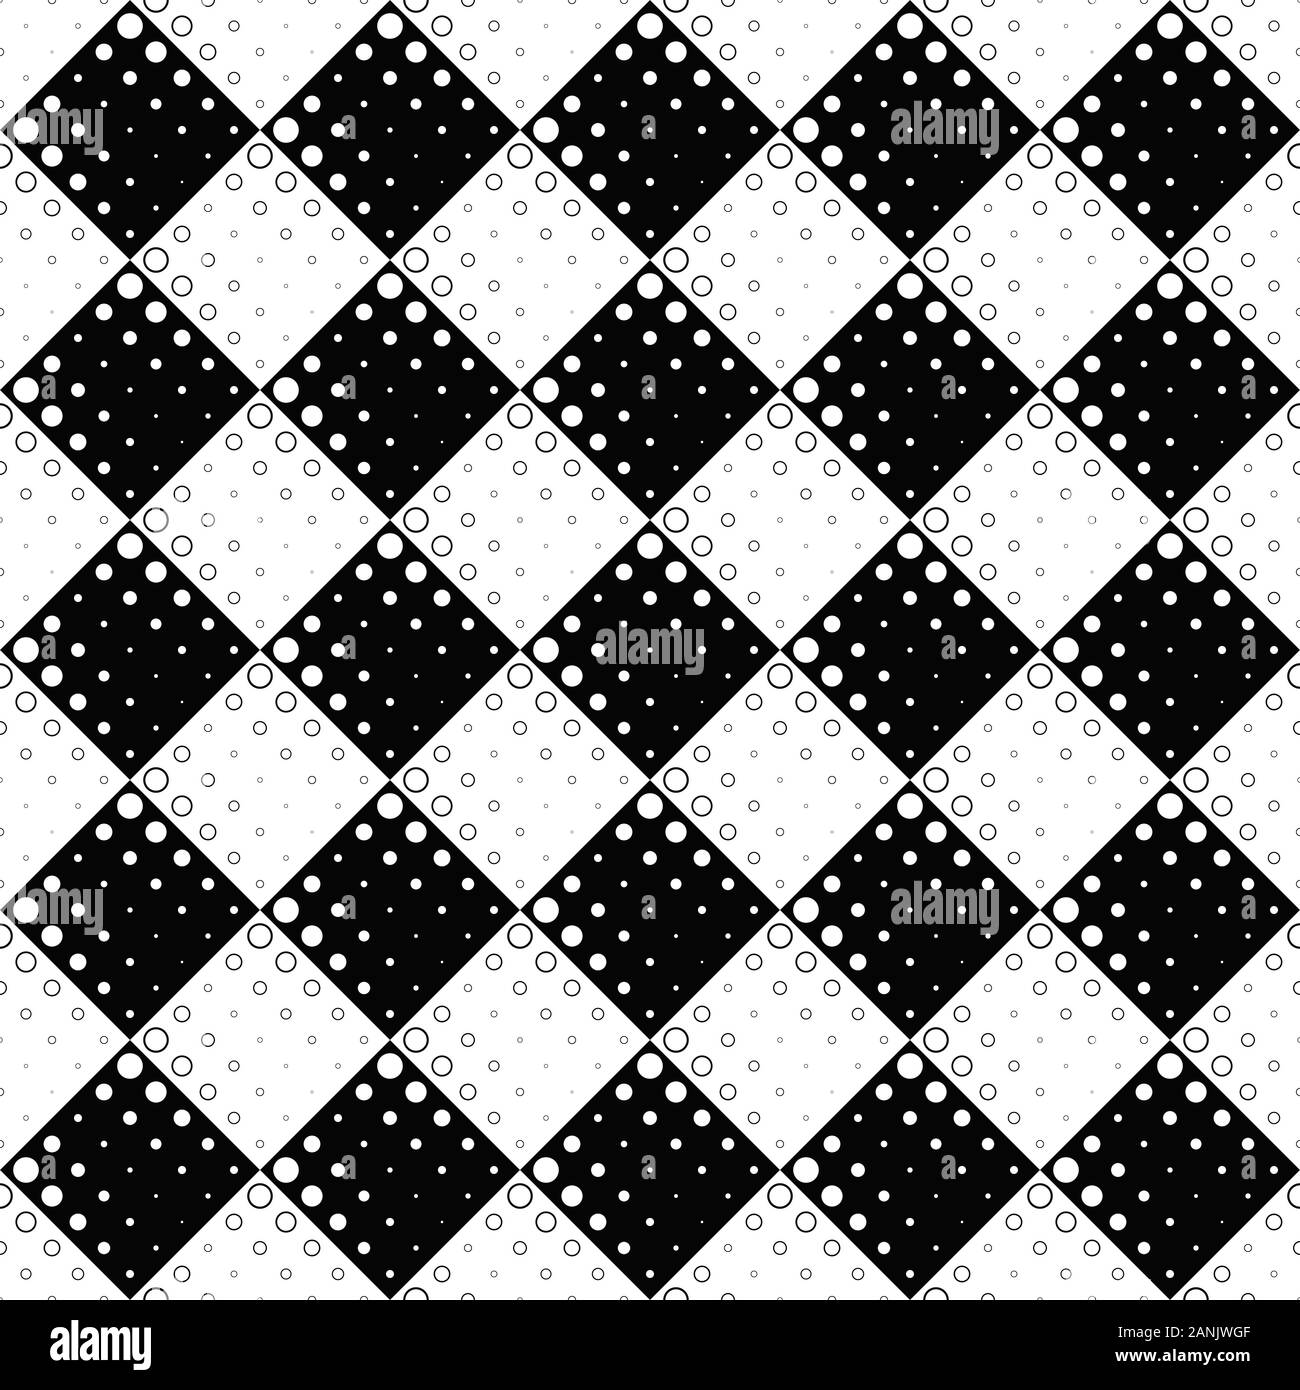 Blanco y negro círculo geométrica perfecta - monocromas de trama de fondo abstracto diseño gráfico vectorial de puntos y círculos Ilustración del Vector